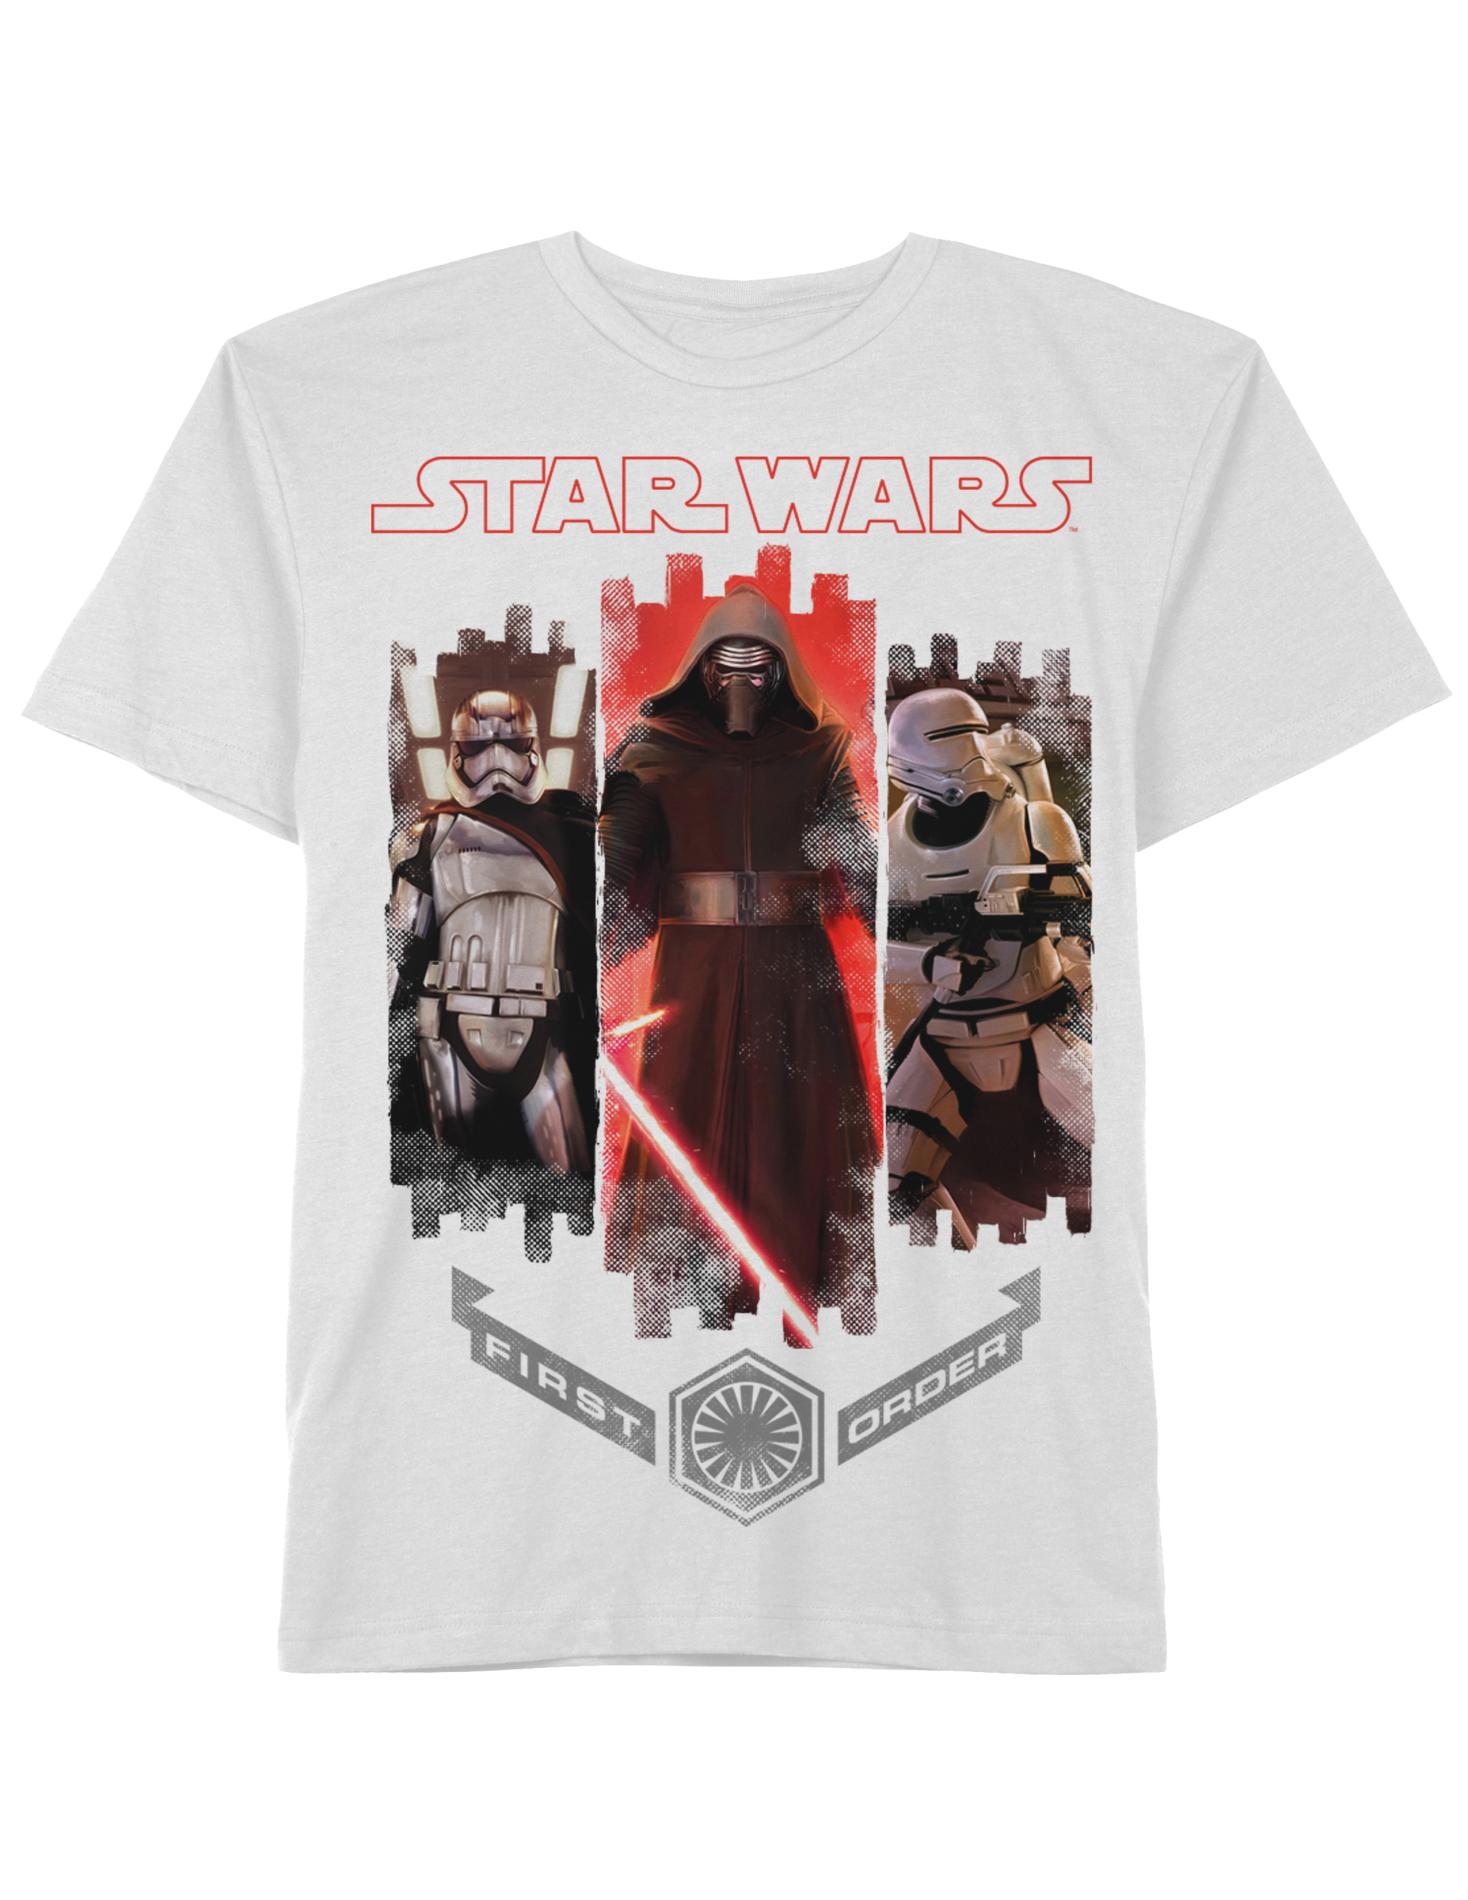 Star Wars Boy's Graphic T-Shirt - First Order